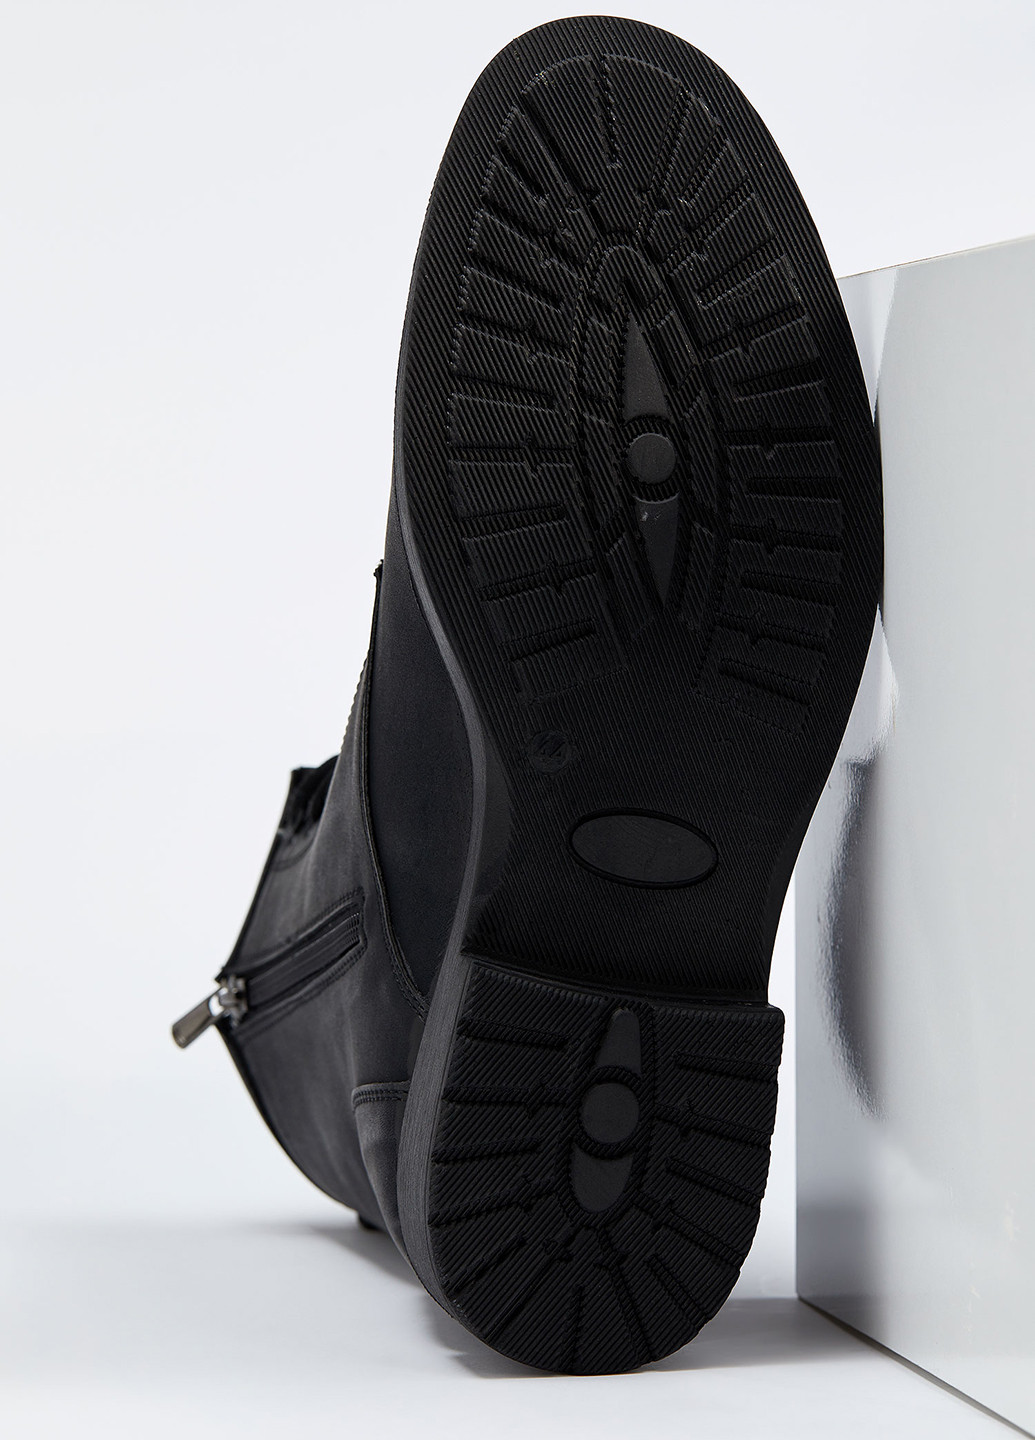 Черные осенние ботинки DeFacto